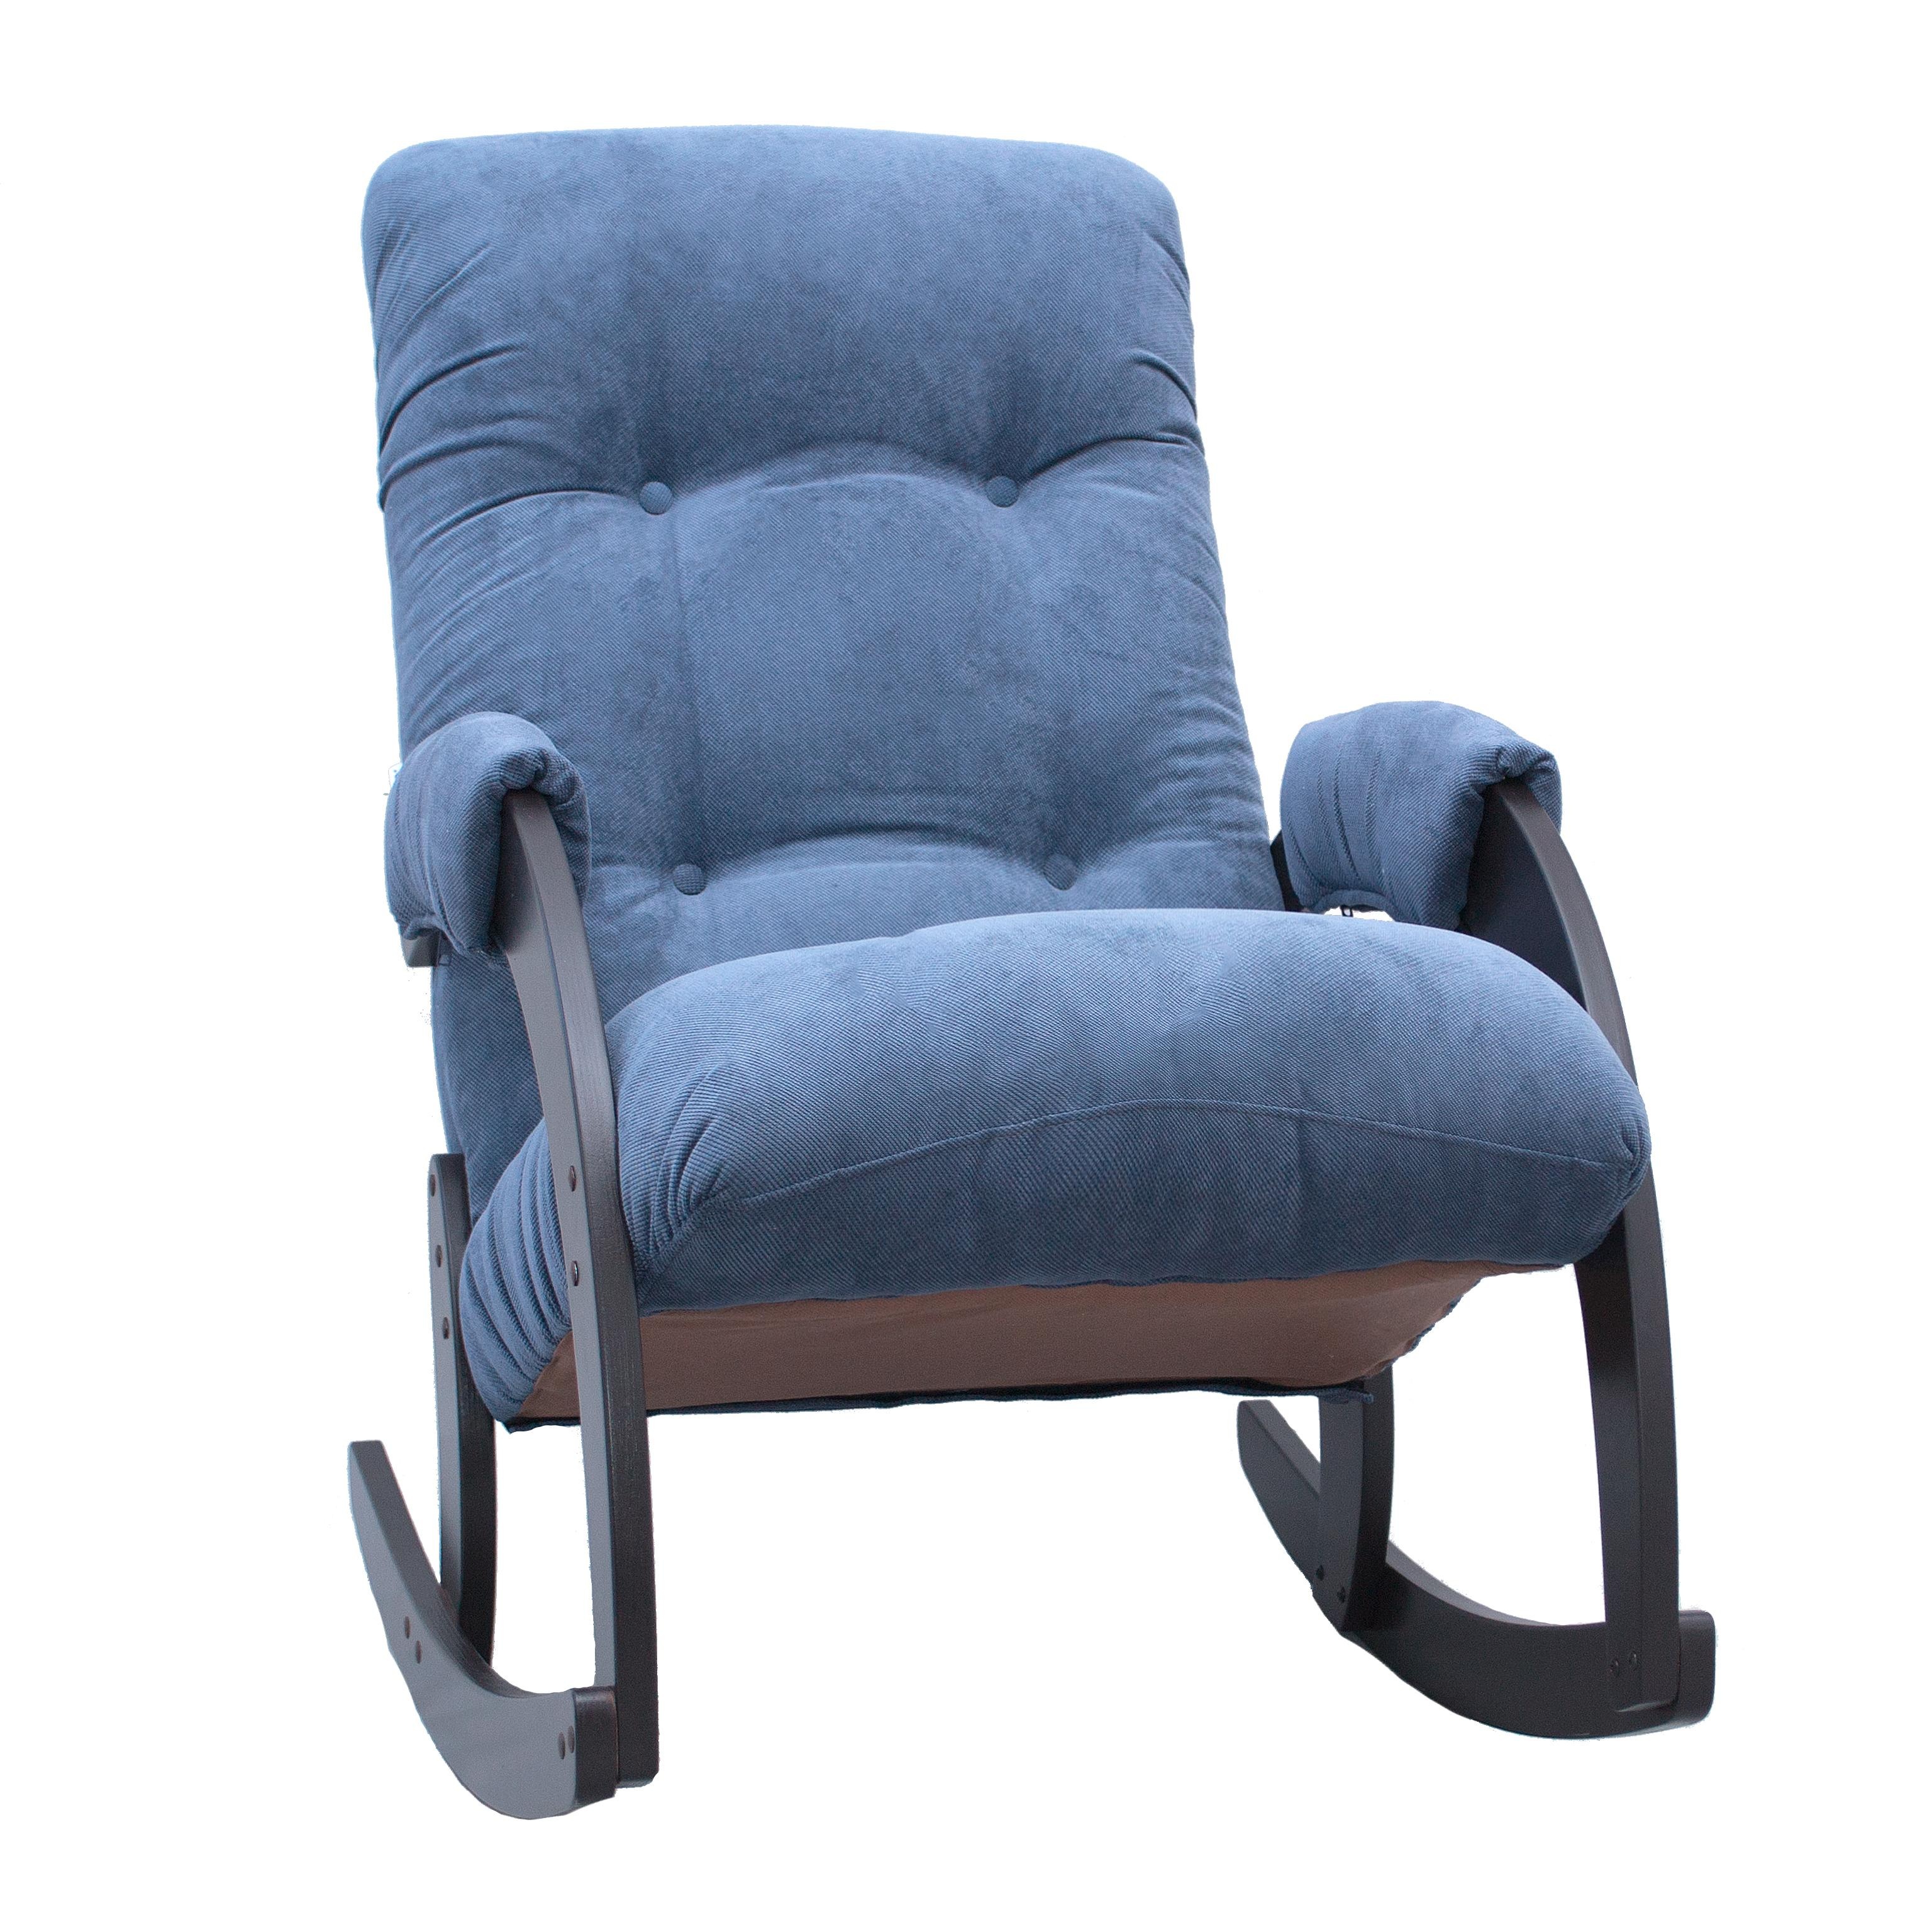 Кресло-качалка verona в синем цвете комфорт голубой 60x87x103 см.